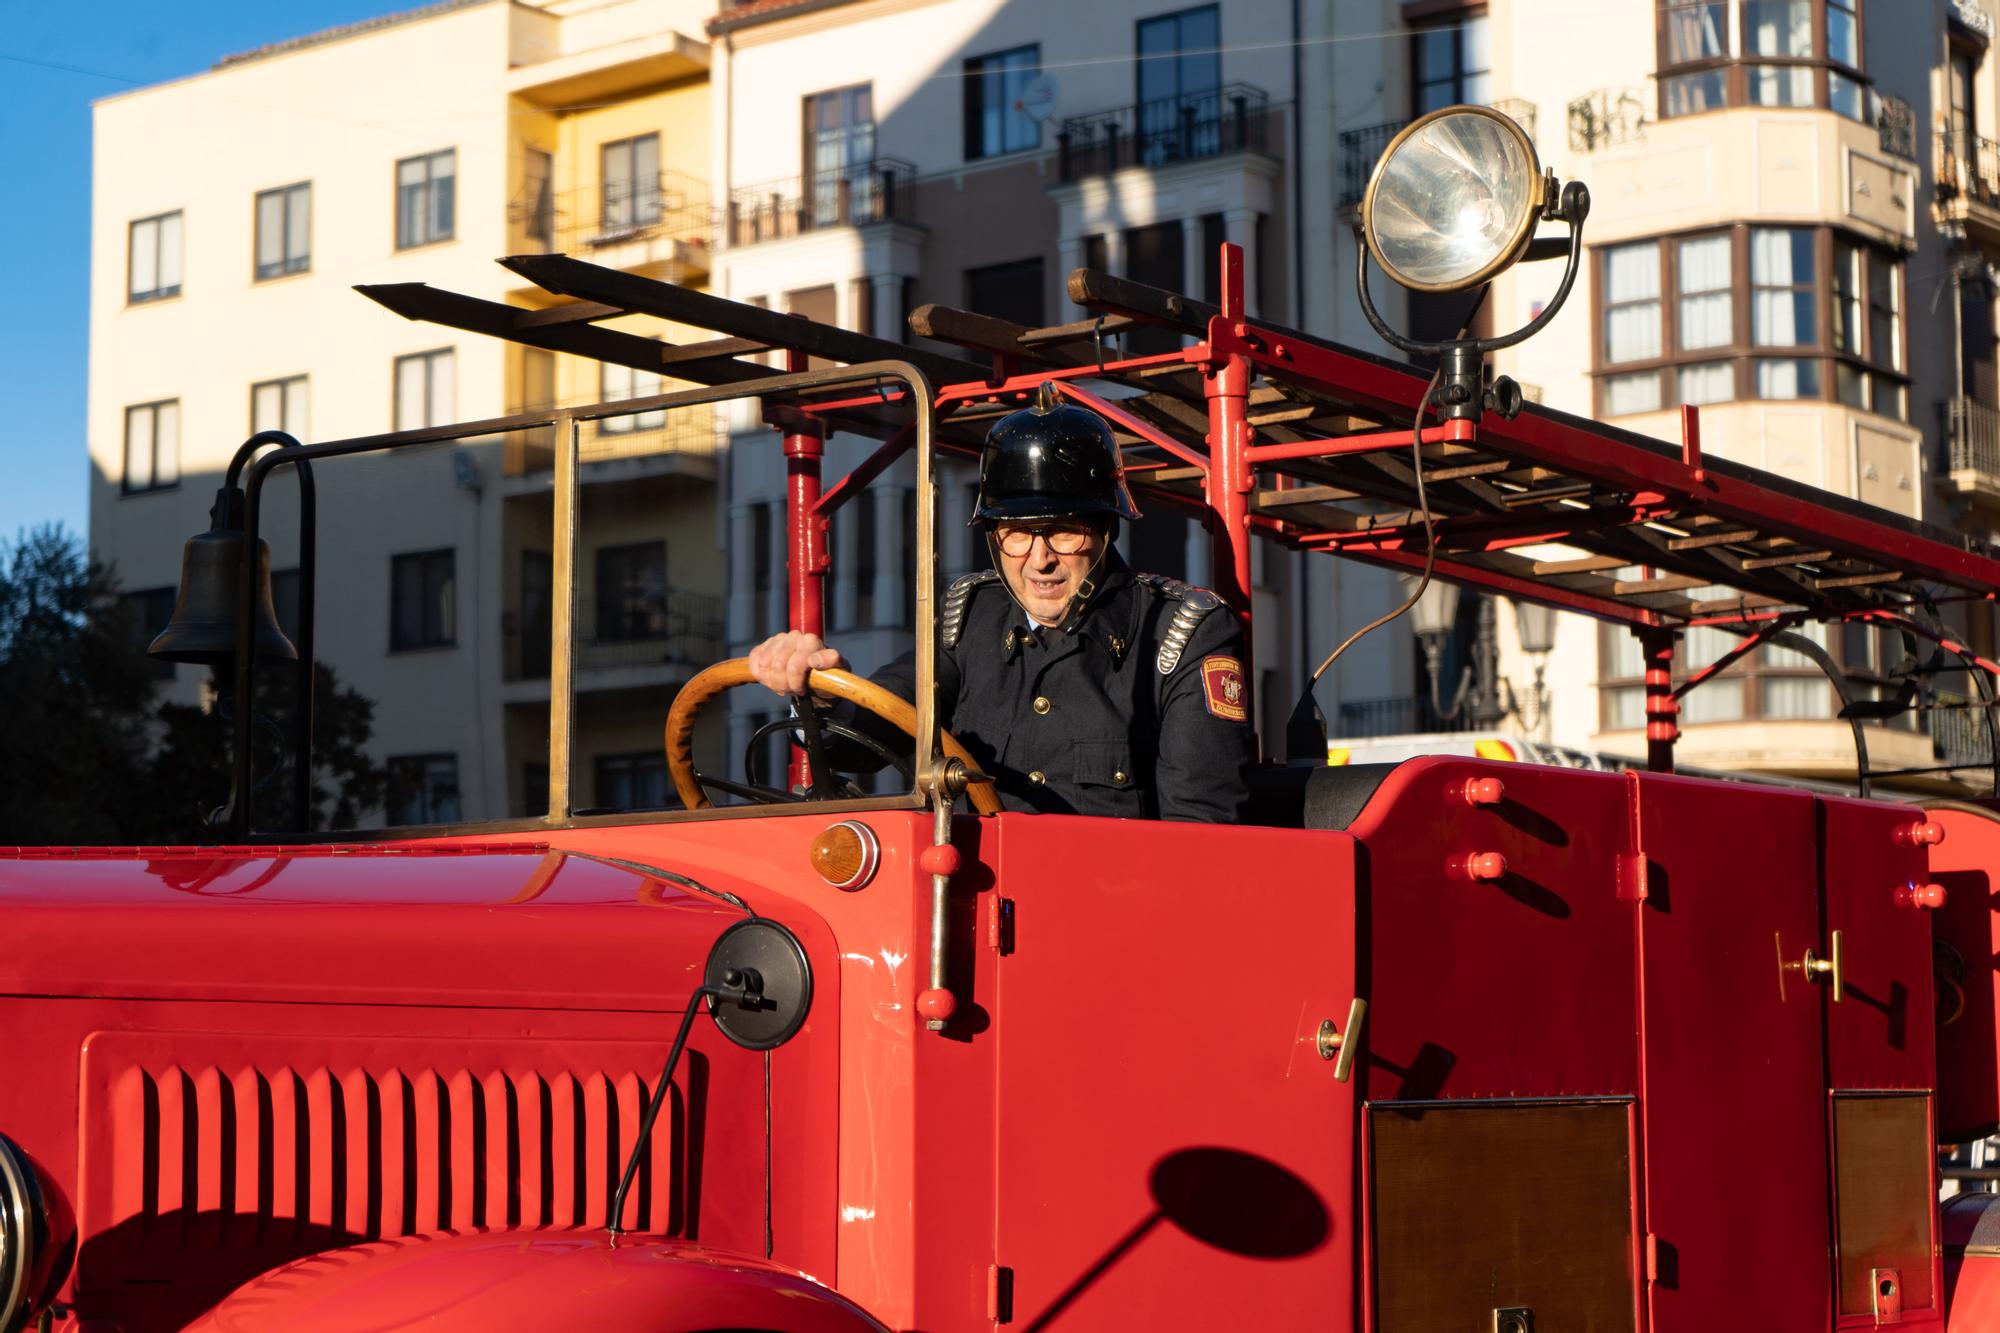 GALERÍA | Este es el camión más antiguo del parque de Bomberos de Zamora